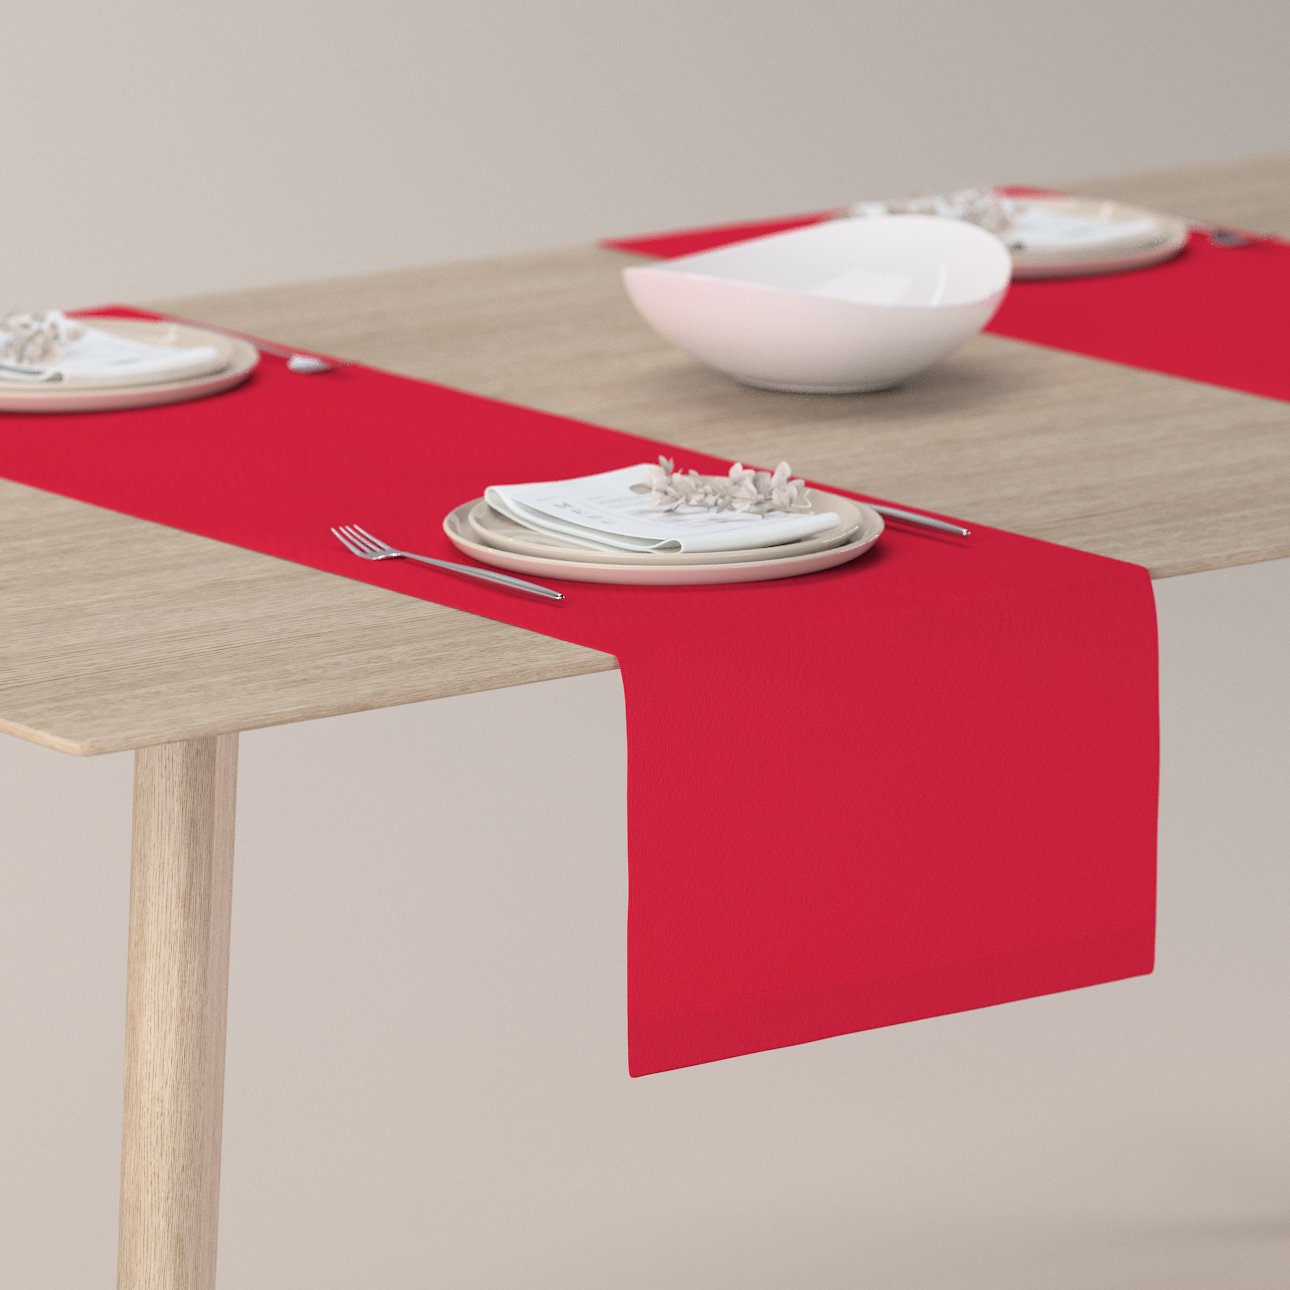 E-shop Dekoria Štóla na stôl, červená, 40 x 130 cm, Quadro, 136-19